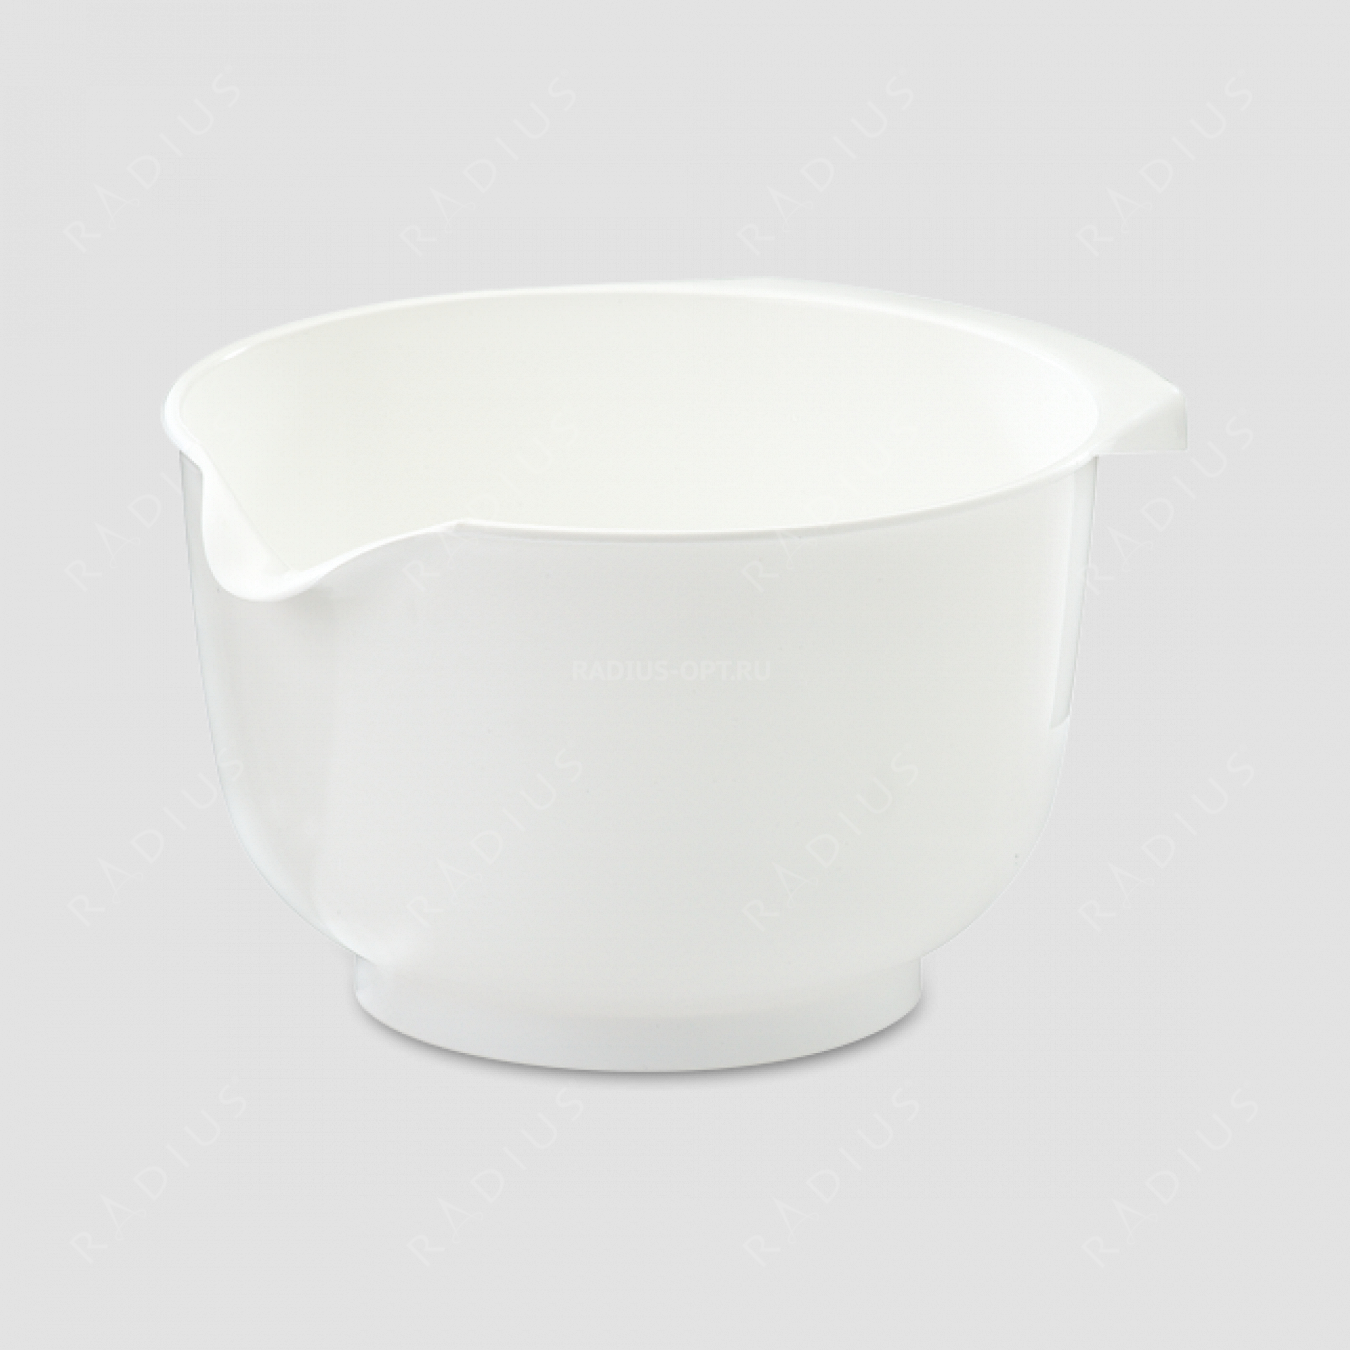 Чаша пластиковая, 2,5 л, нескользящее дно, без упаковки, серия Baking, WESTMARK, Германия